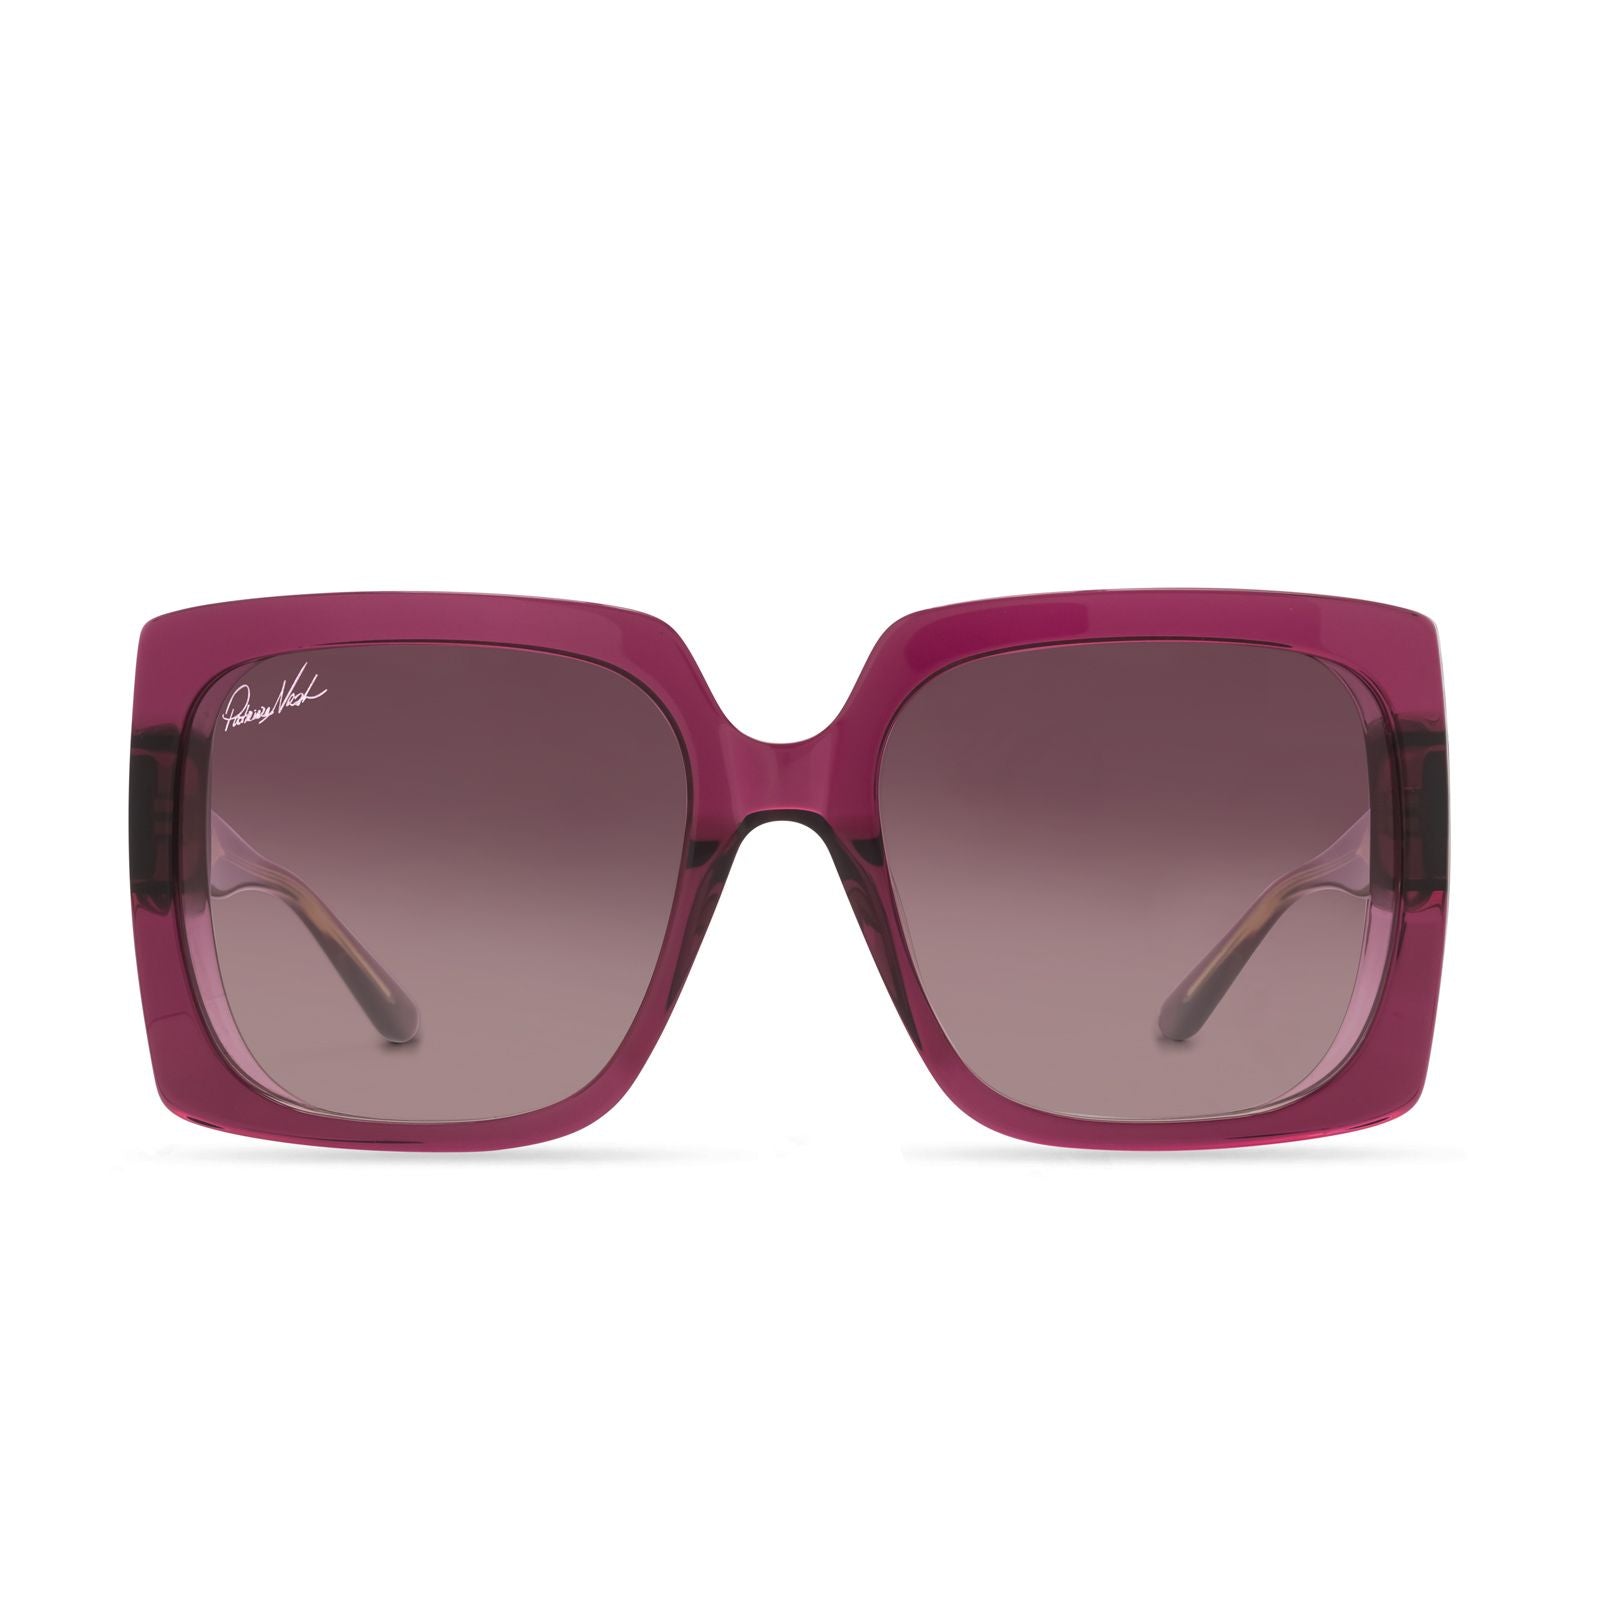 DIFF | Jackie - Wine Crystal Sunglasses